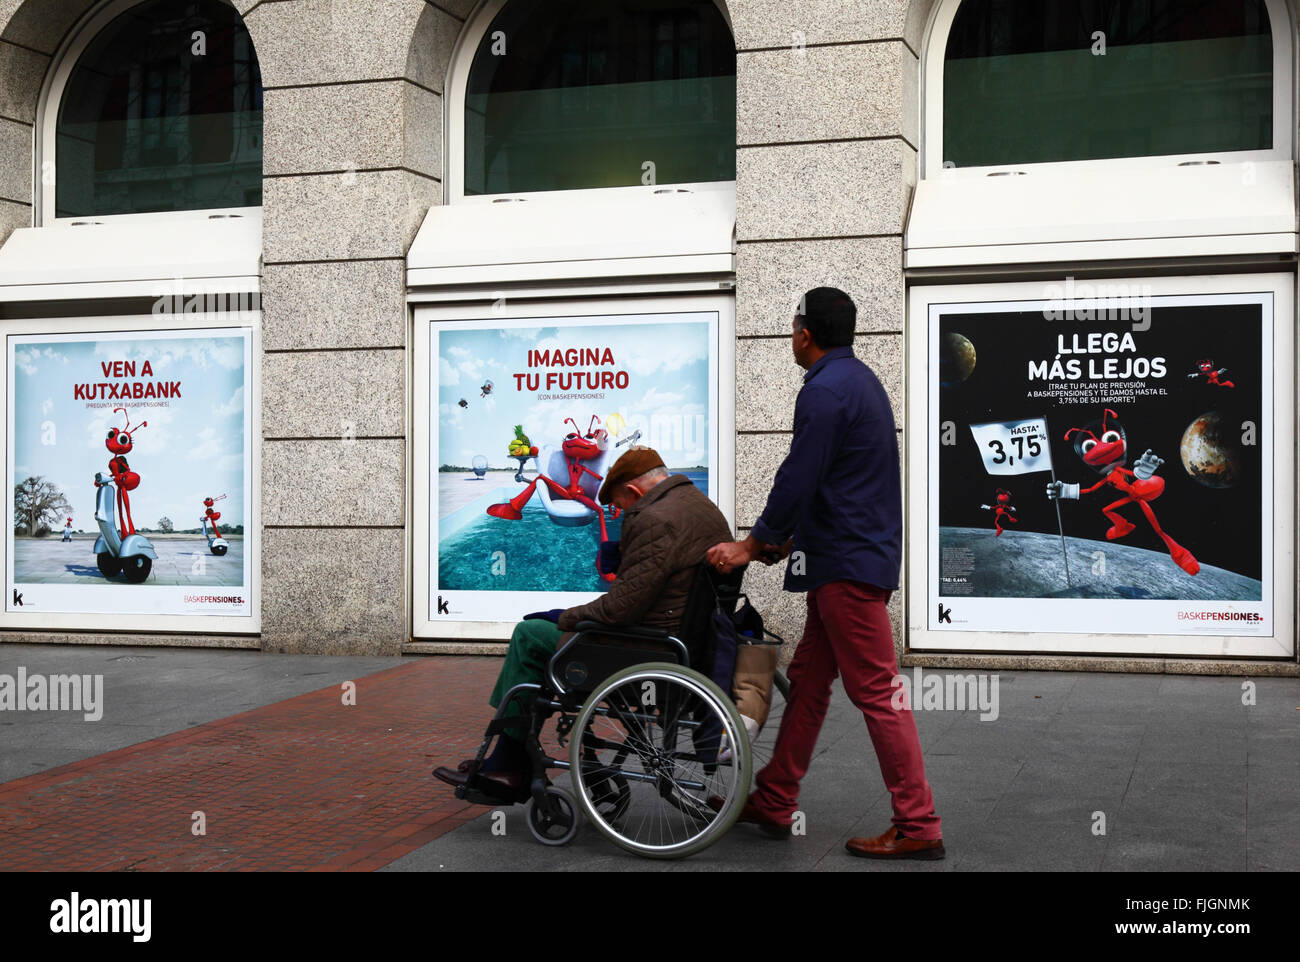 Mann schob Rentner im Rollstuhl, die letzten anzeigen für Baskepensiones Pensionspläne auf Kutxabank Gebäude, Bilbao, Spanien Stockfoto